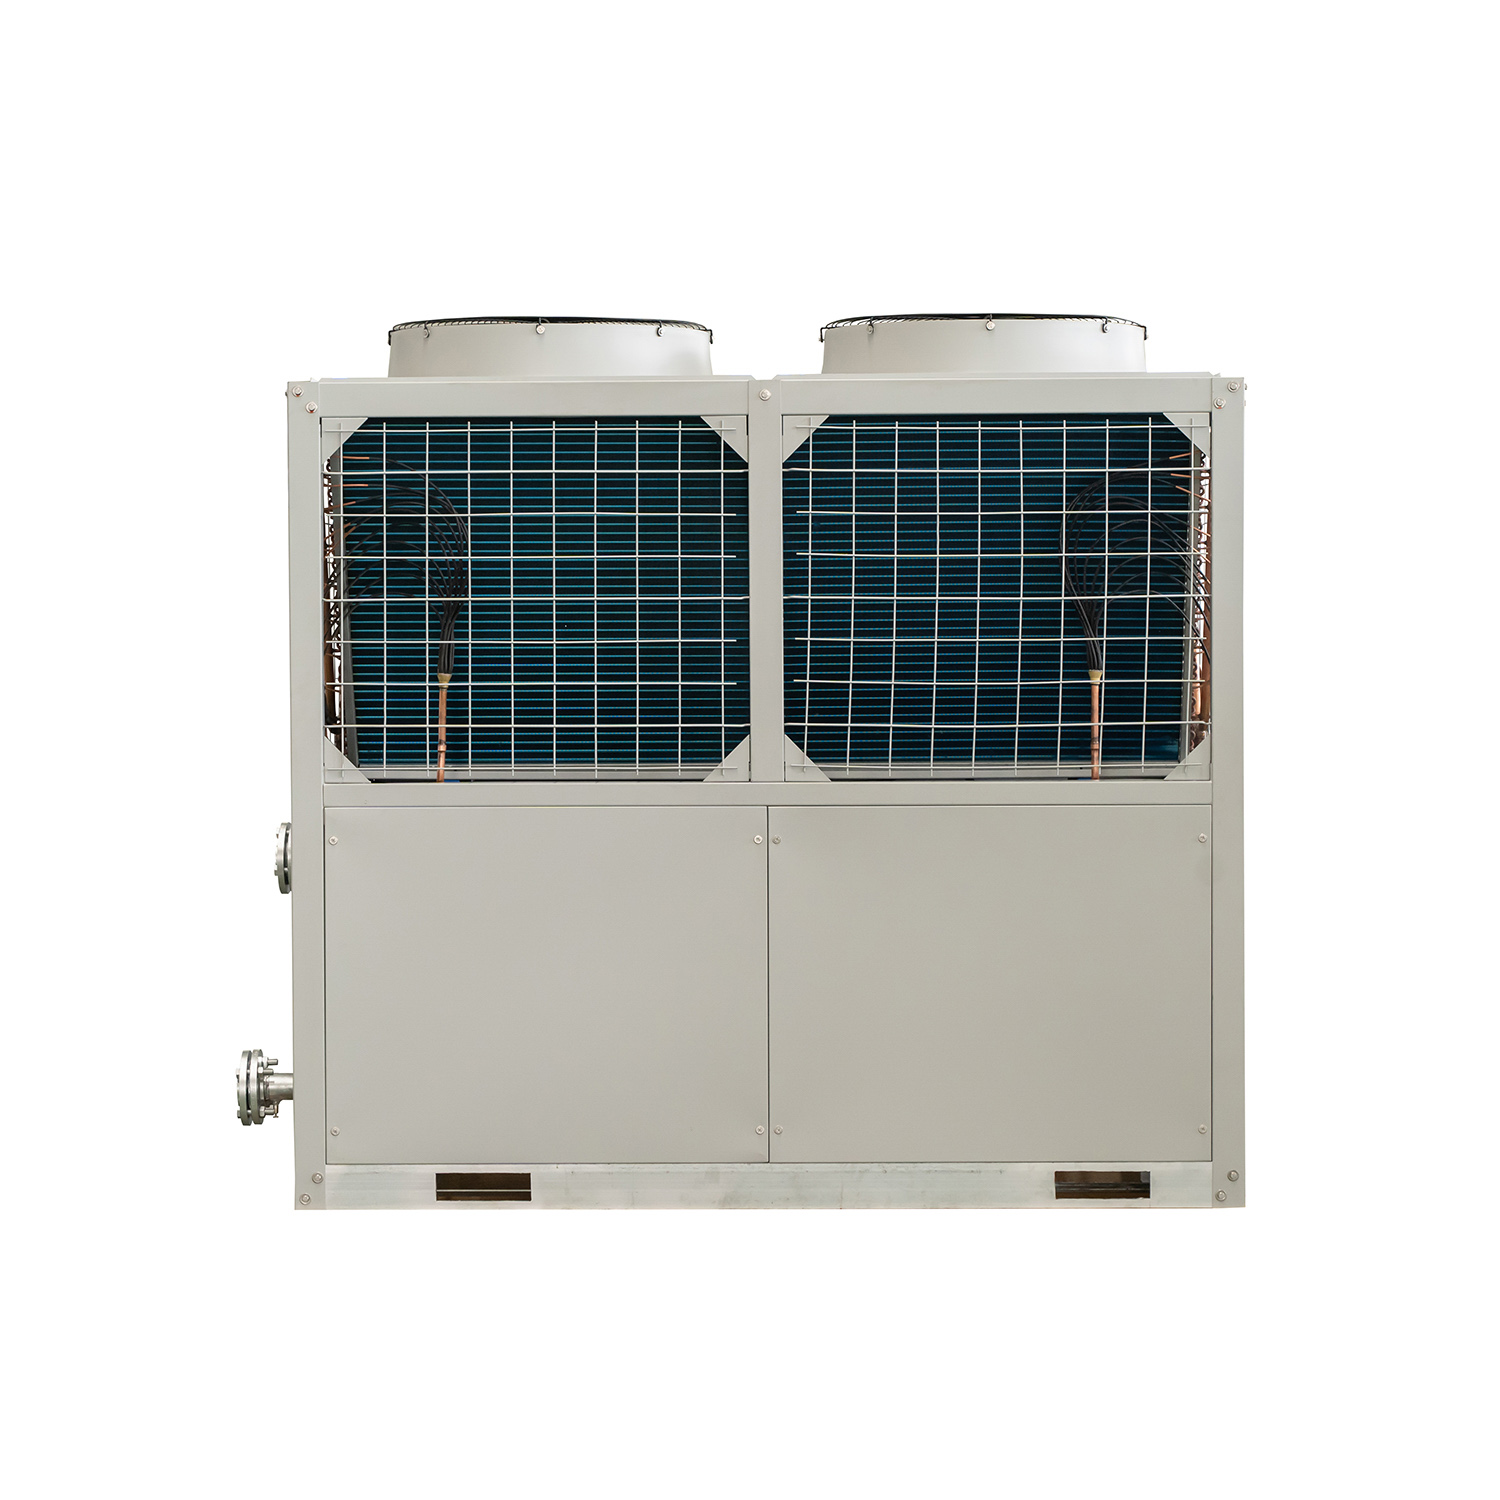 Energiesparender, modularer, luftgekühlter Spiralkühler für den gewerblichen Einsatz